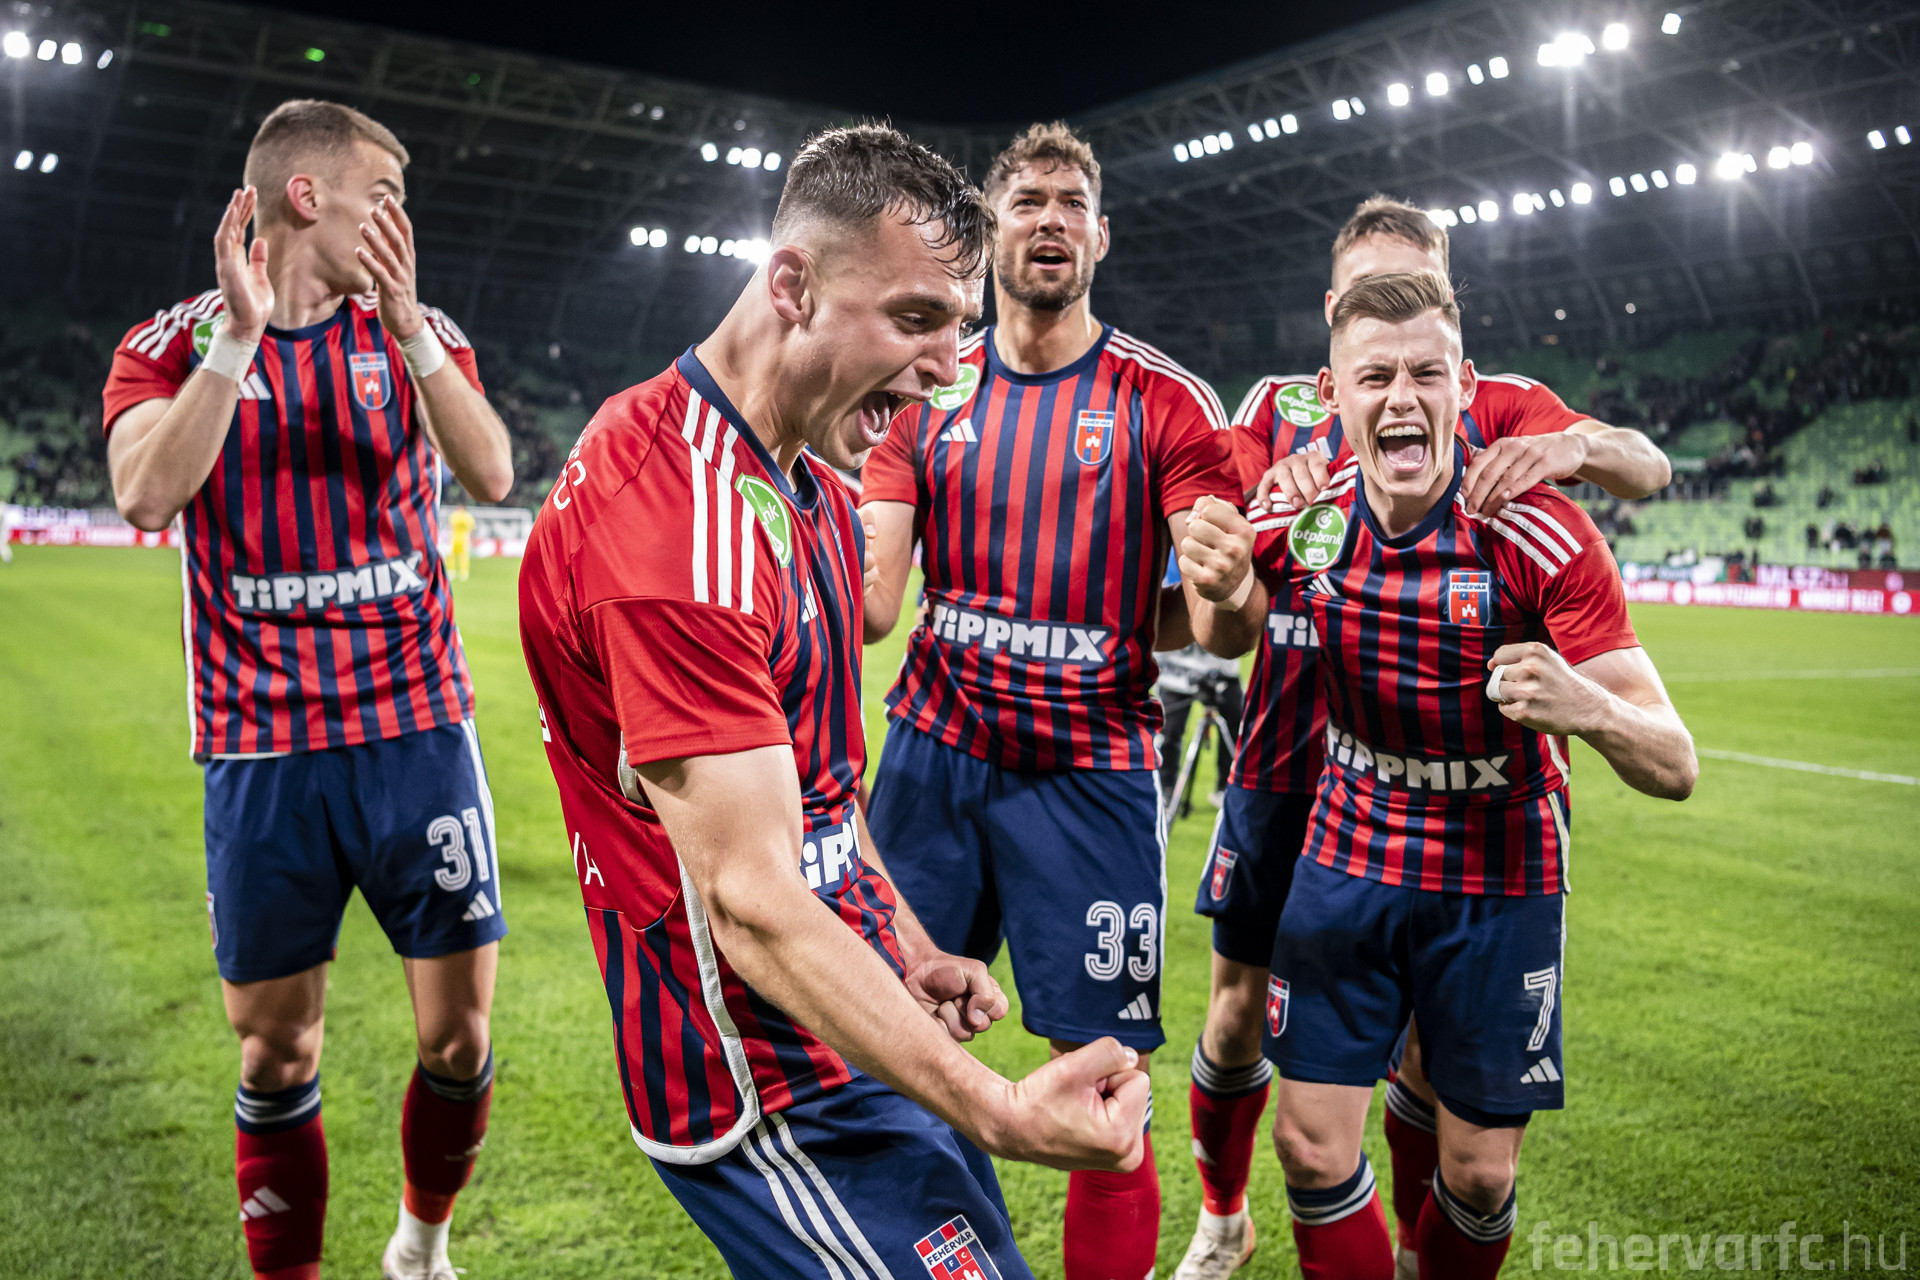 Fehérvár FC - Ferencvárosi TC (3-5) összefoglaló